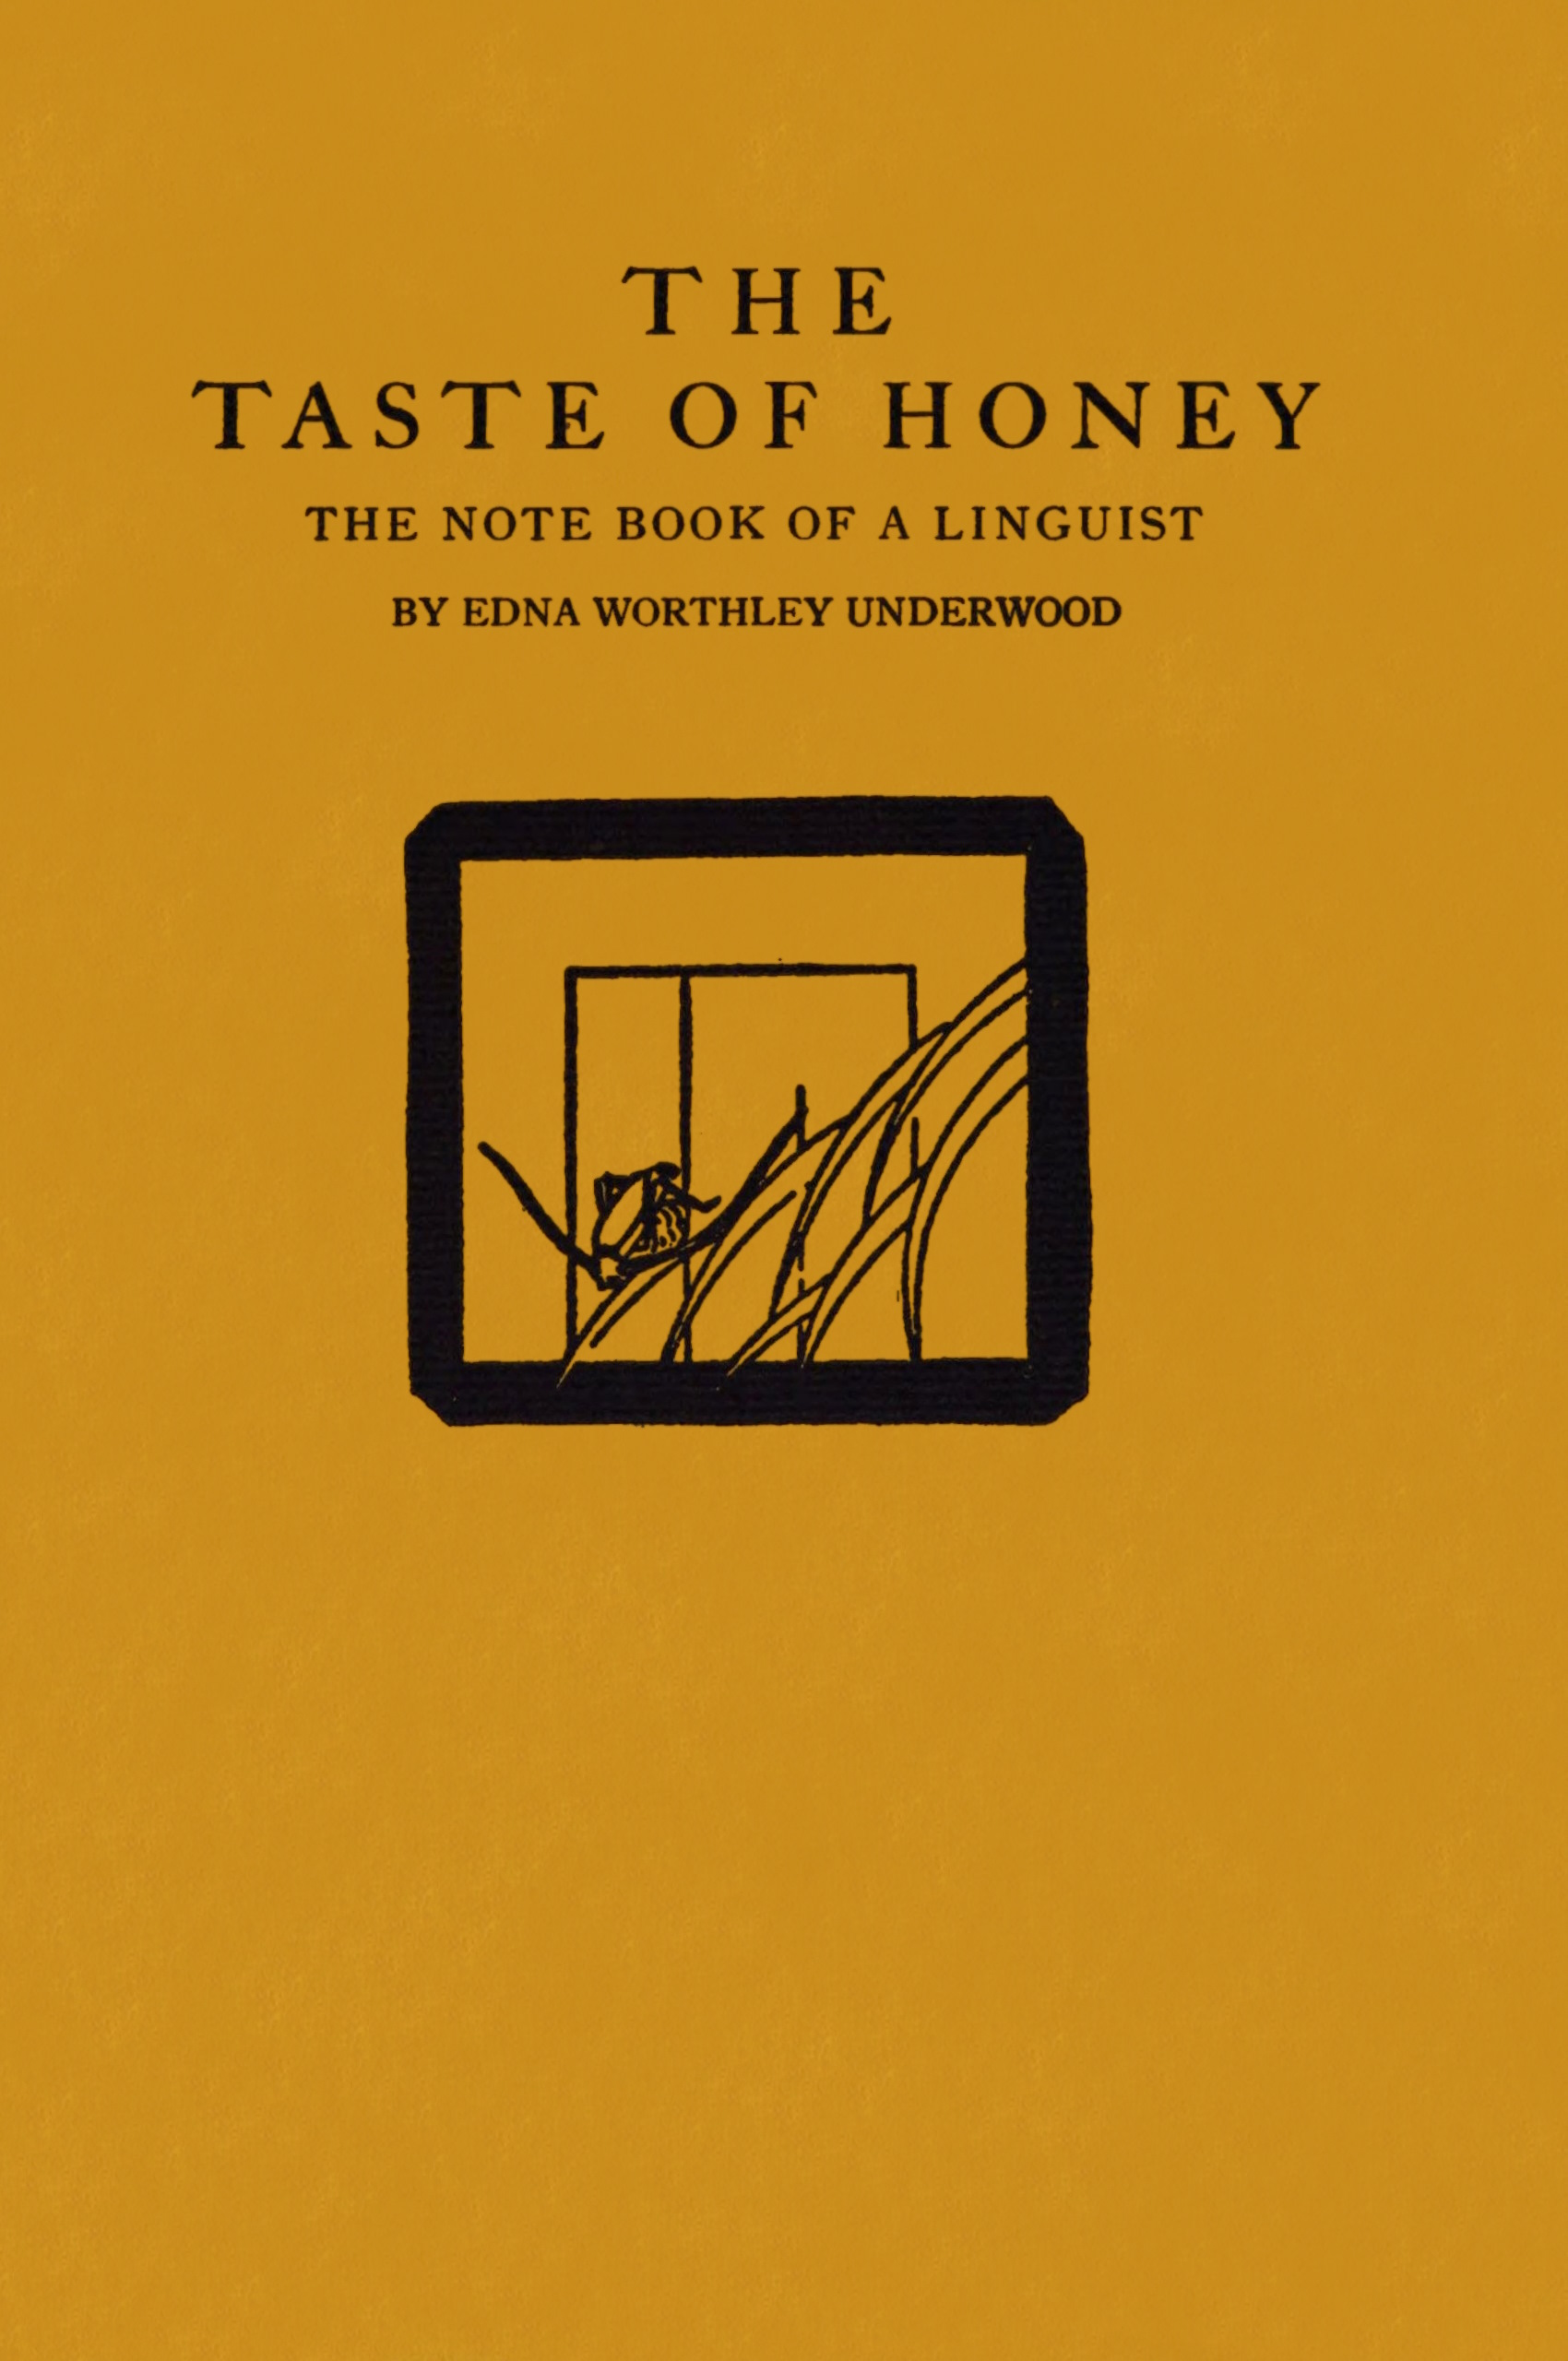 The taste of honey